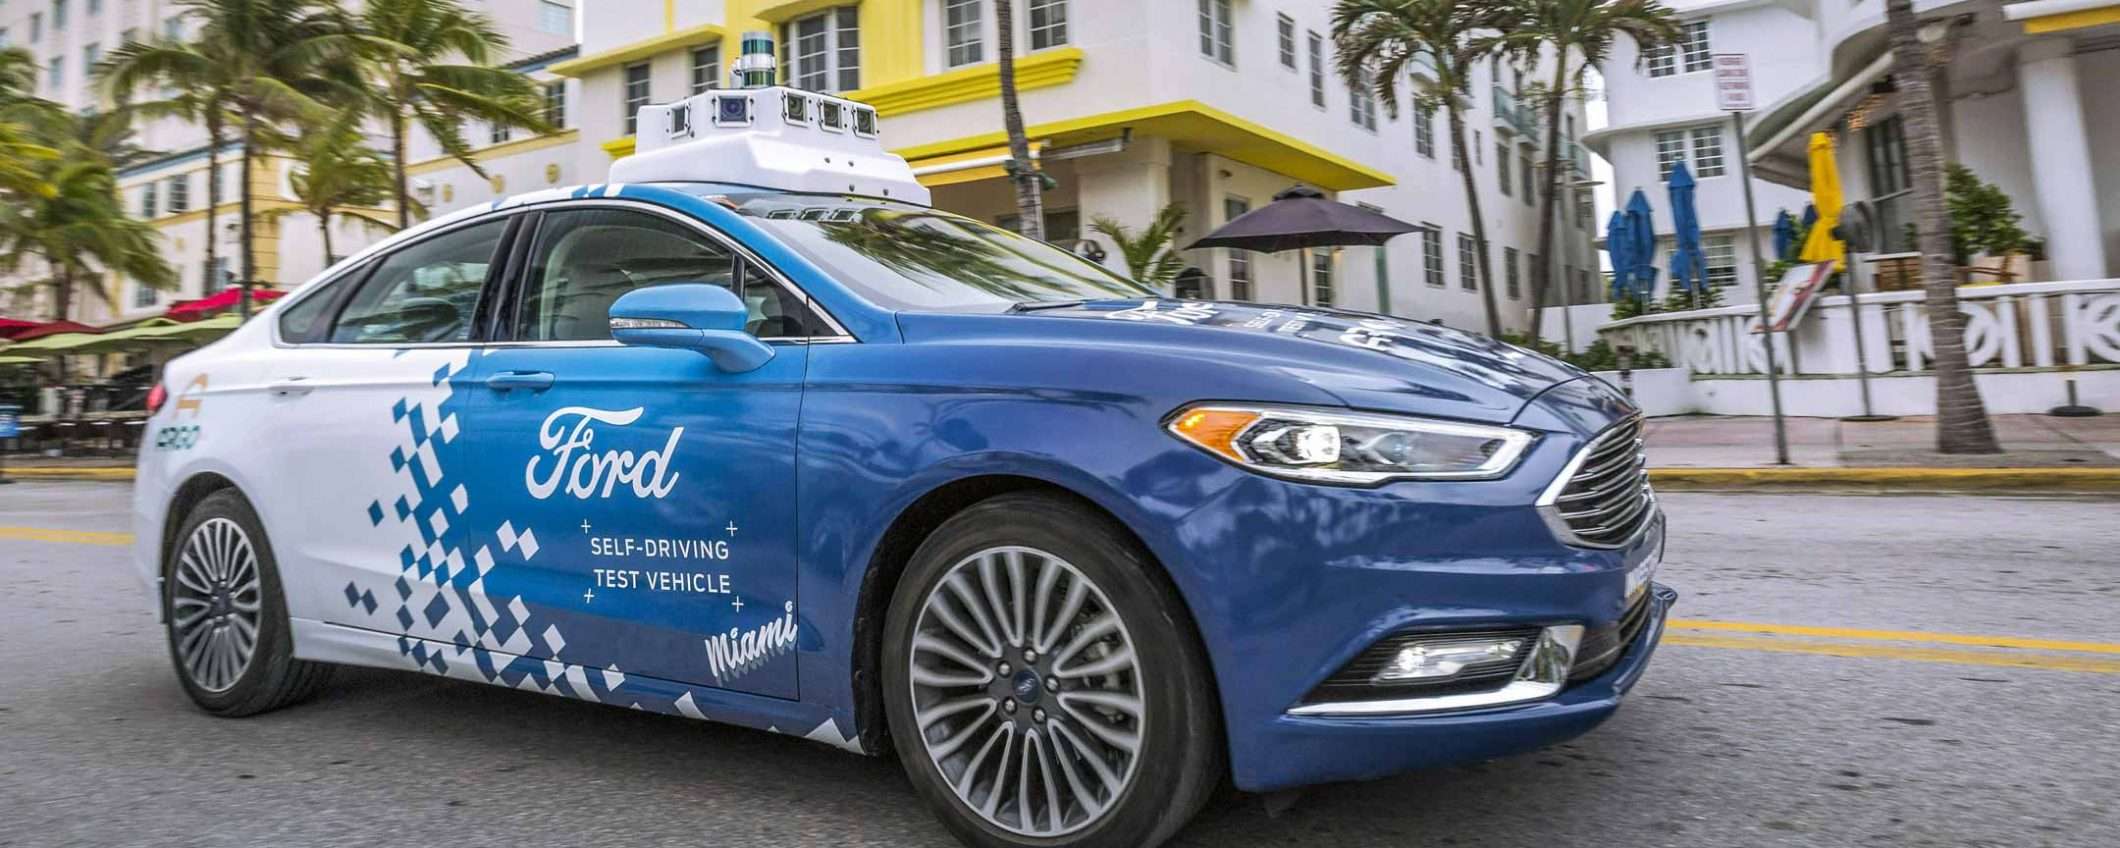 Ford: la self-driving car si guida col telefono